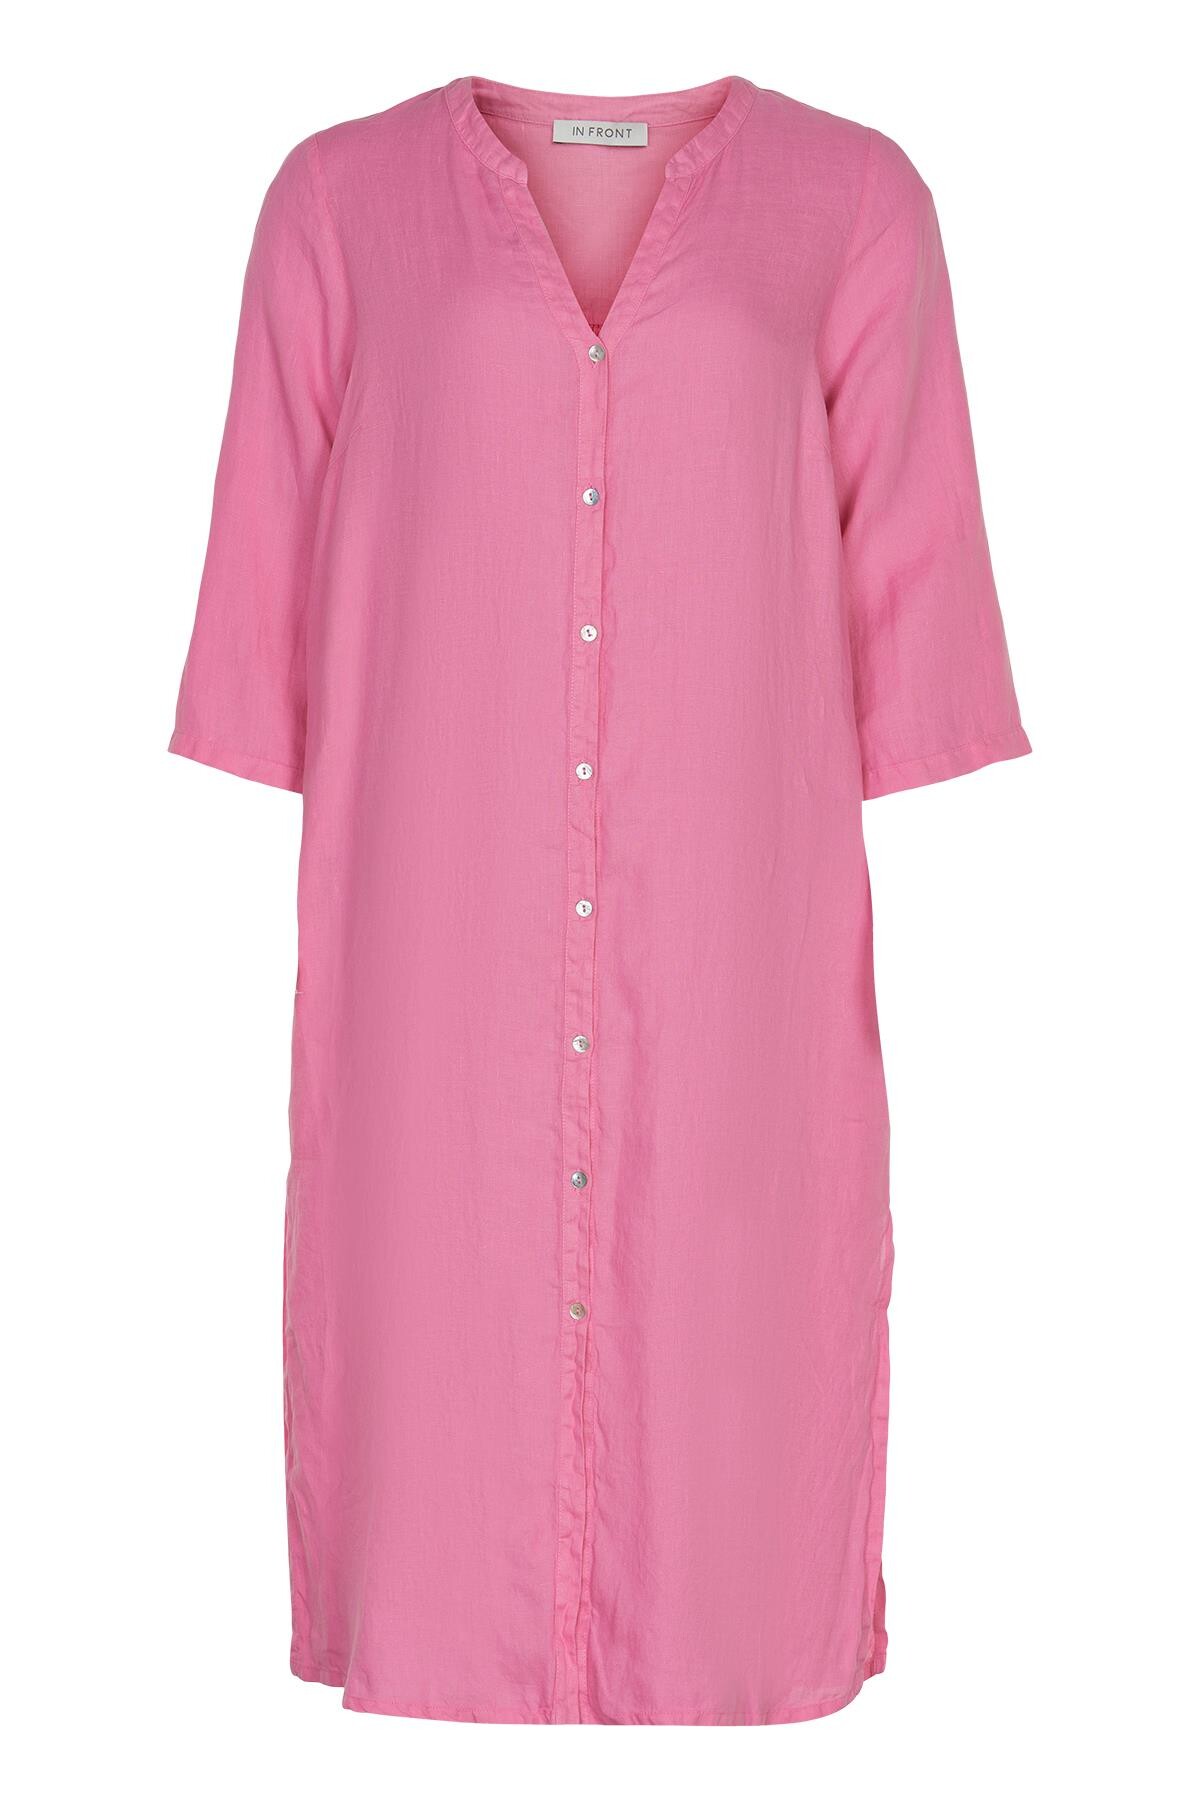 Billede af IN FRONT Lino Lang Skjortekjole, Farve: Pink, Størrelse: S, Dame